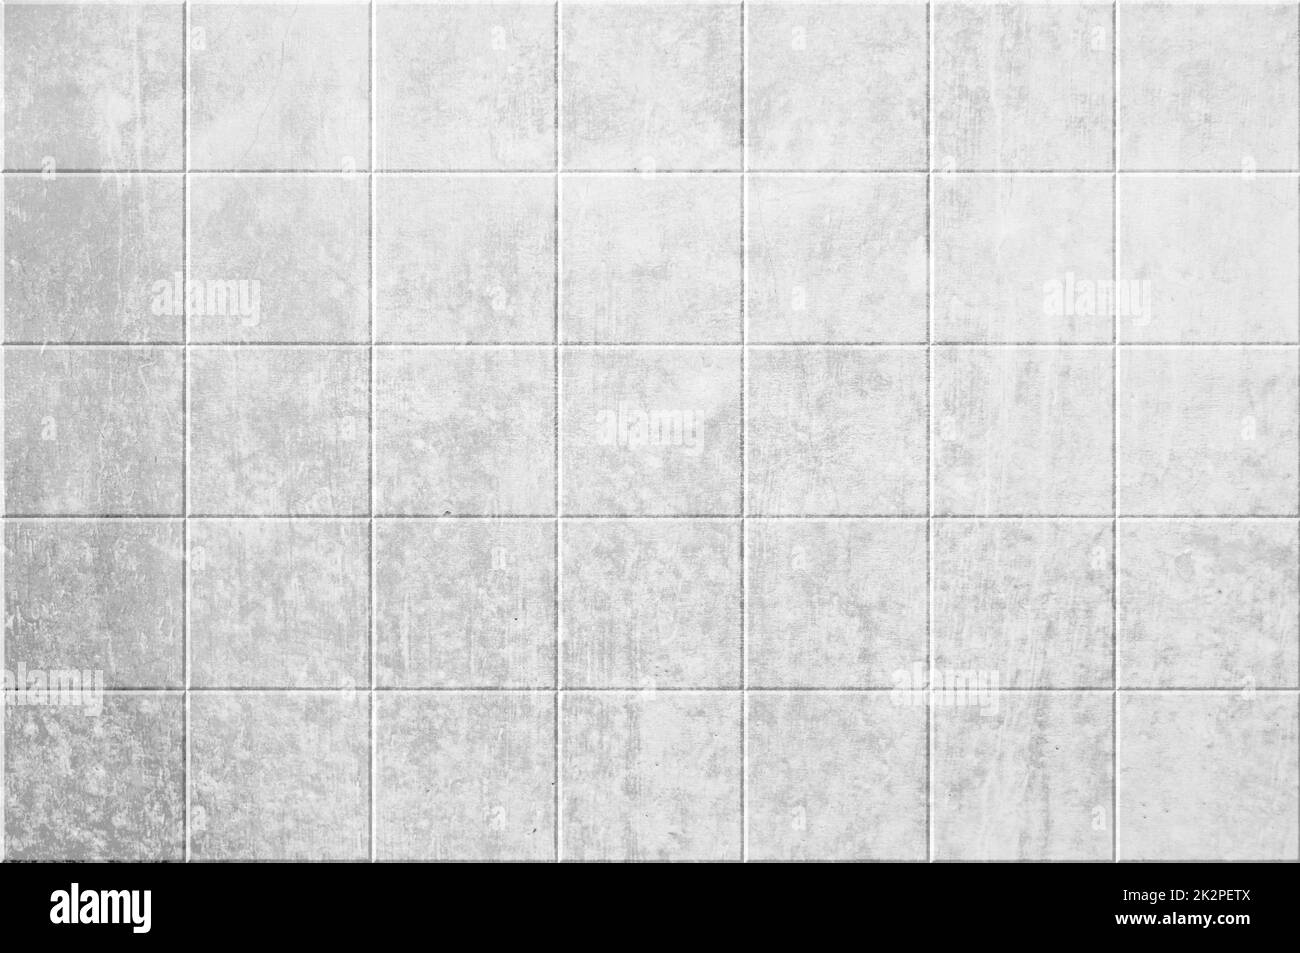 Mur gris blanc sale avec carreaux Banque D'Images